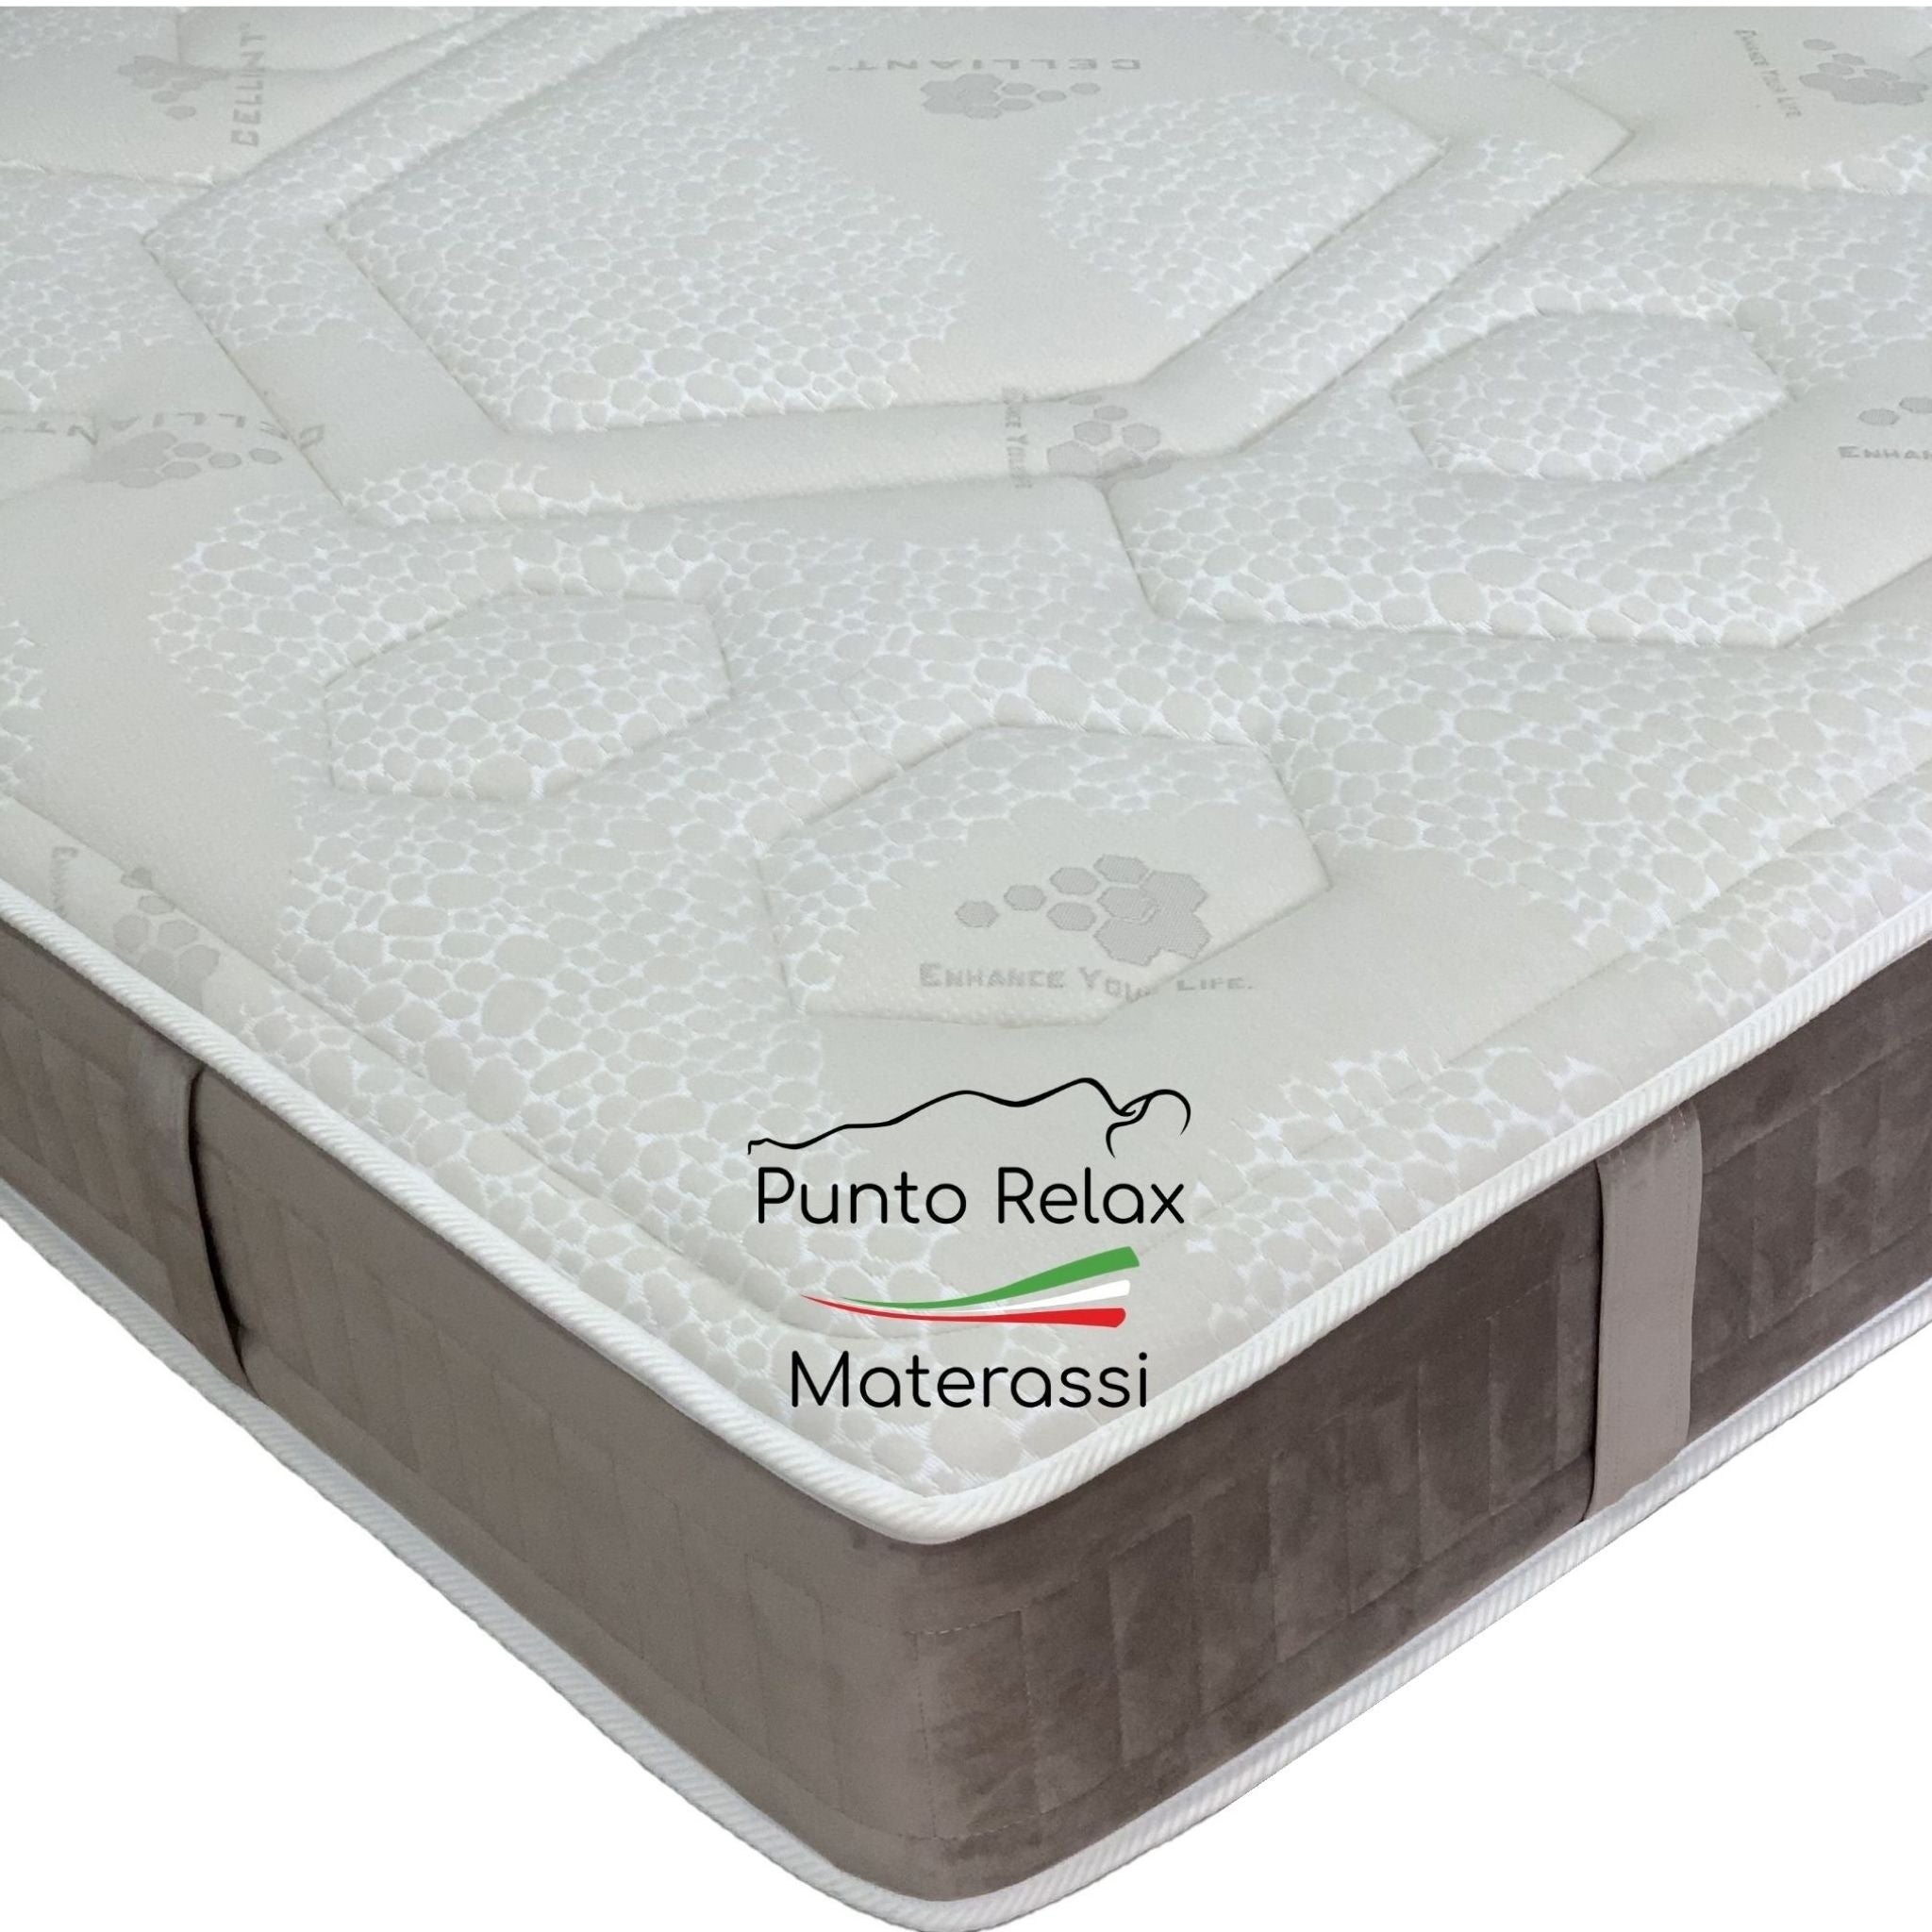 Materasso Memory Foam "Prime Relax" con Cover Celliant Sfoderabile - Grado di rigidità 7/10 - Punto Relax Materassi